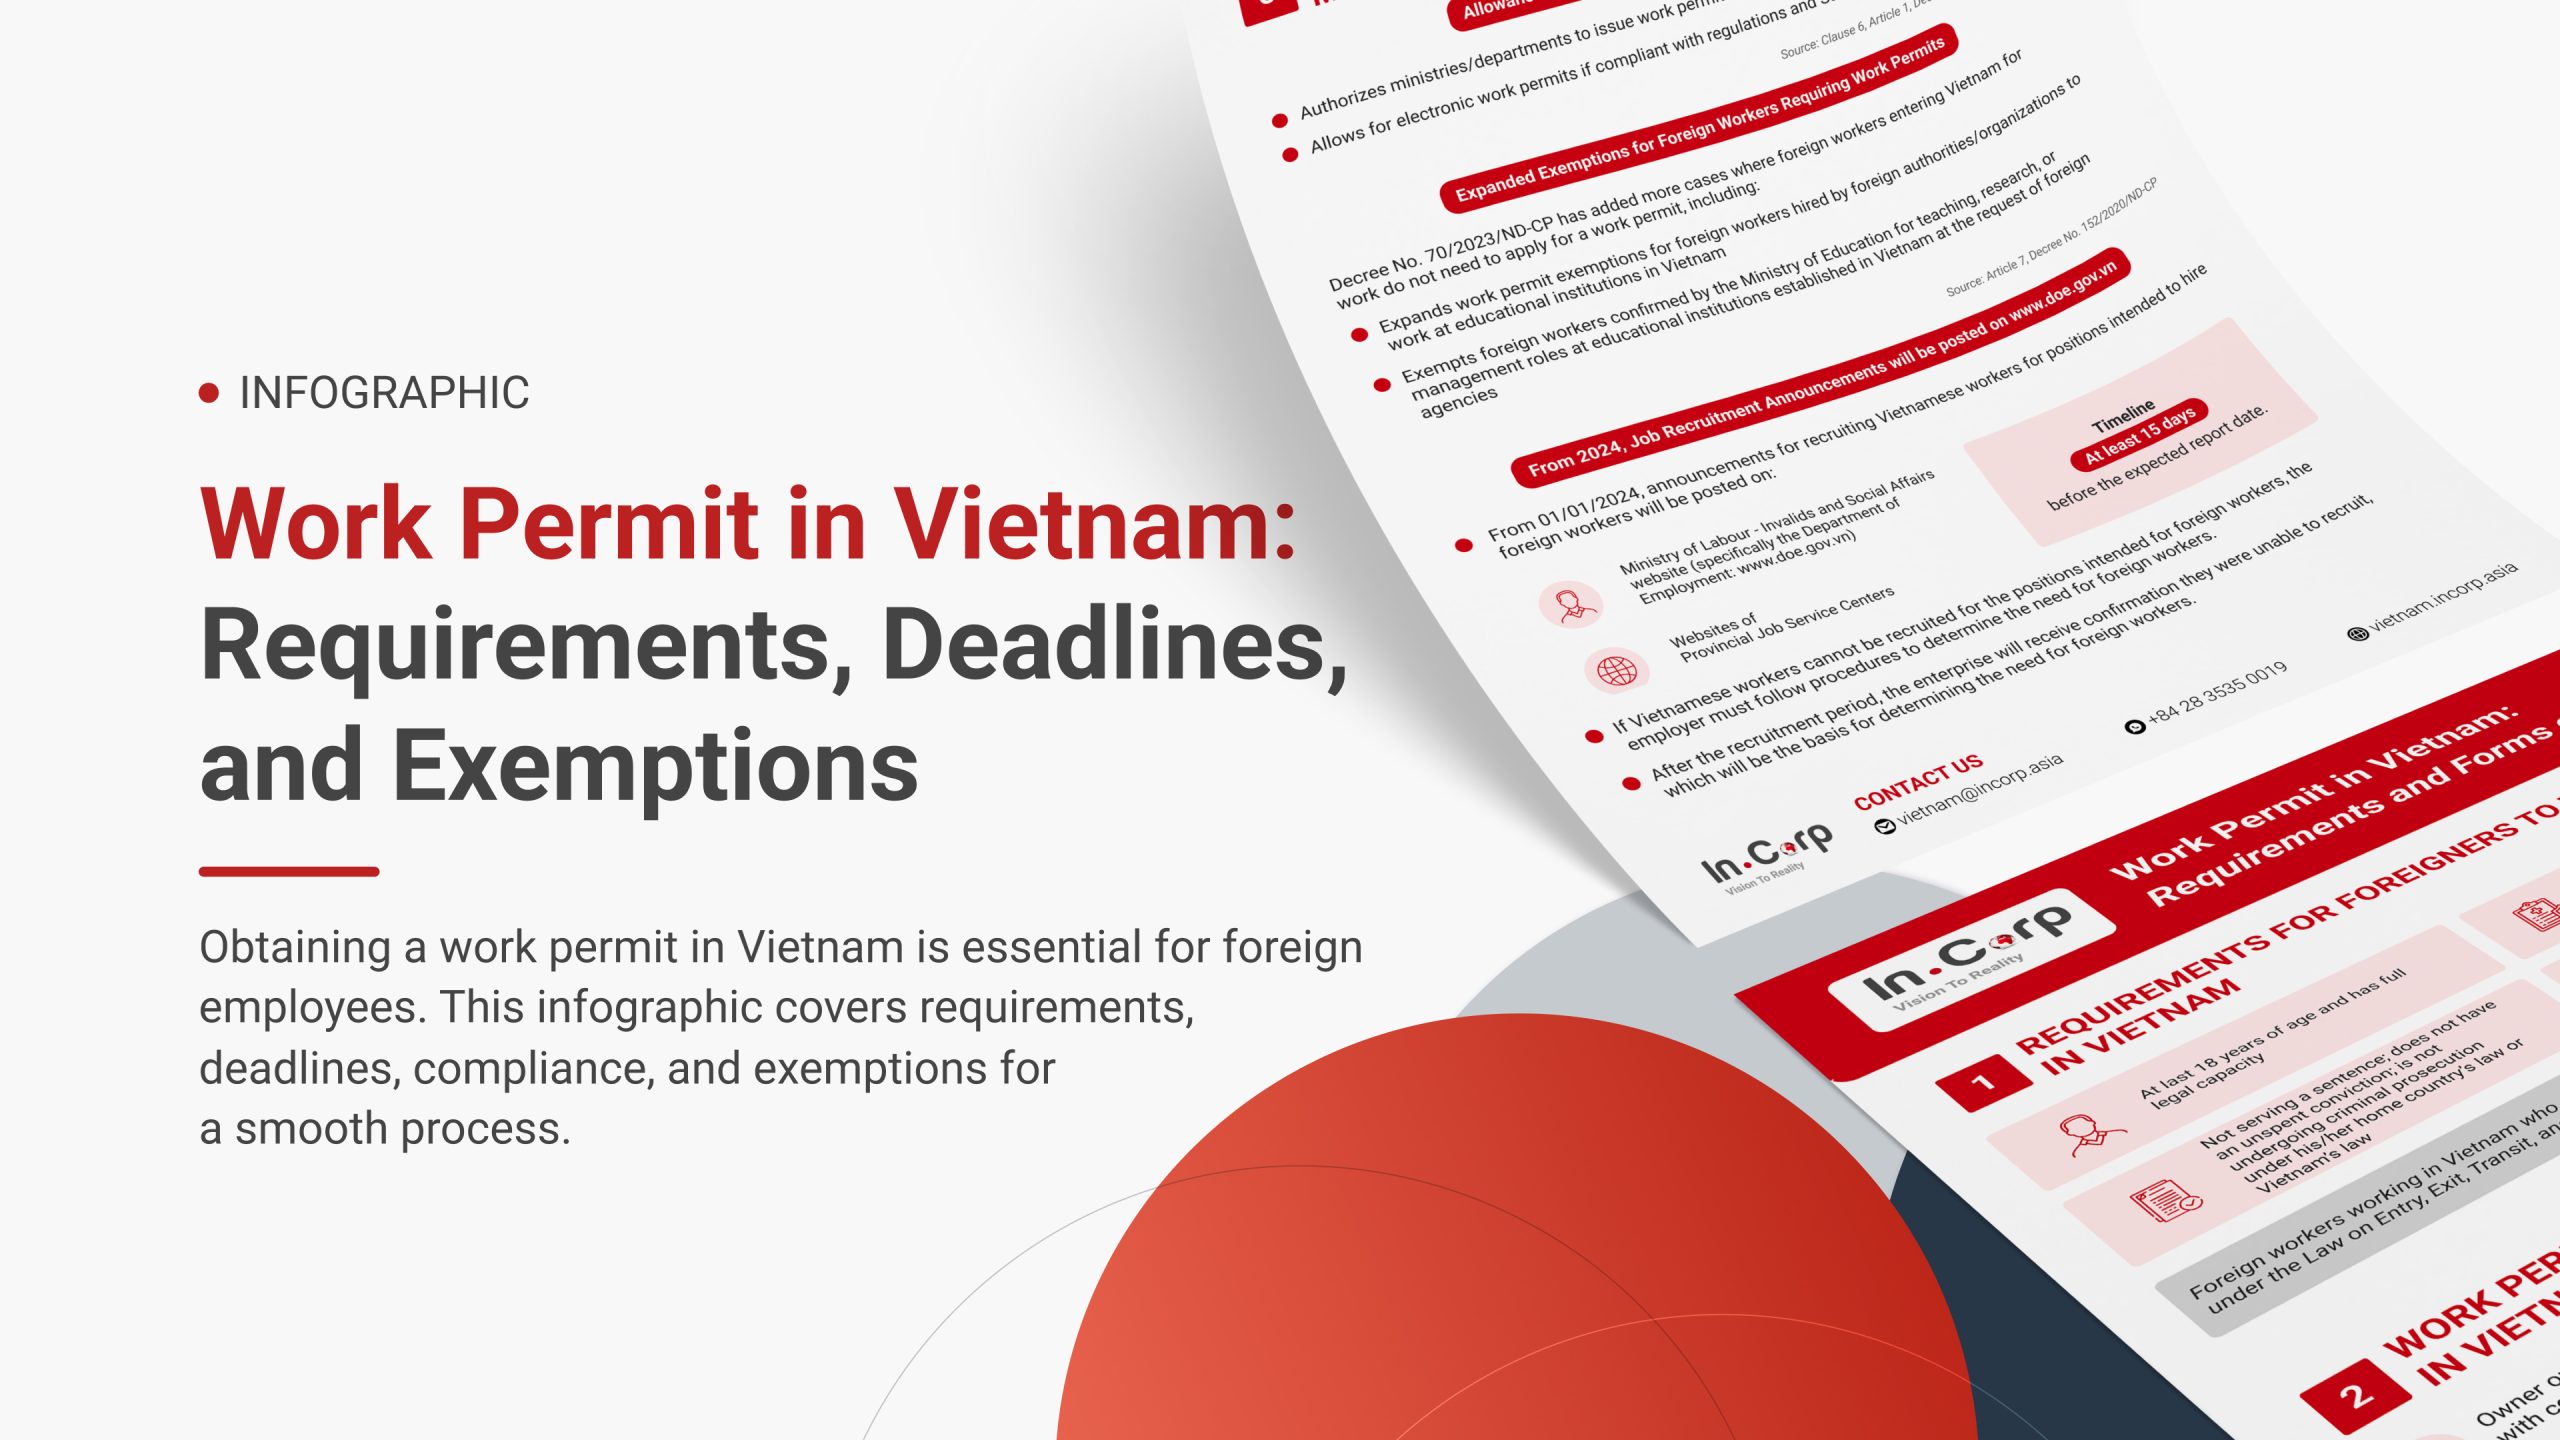 Work Permit in Vietnam: Requirements, Deadlines, and Exemptions